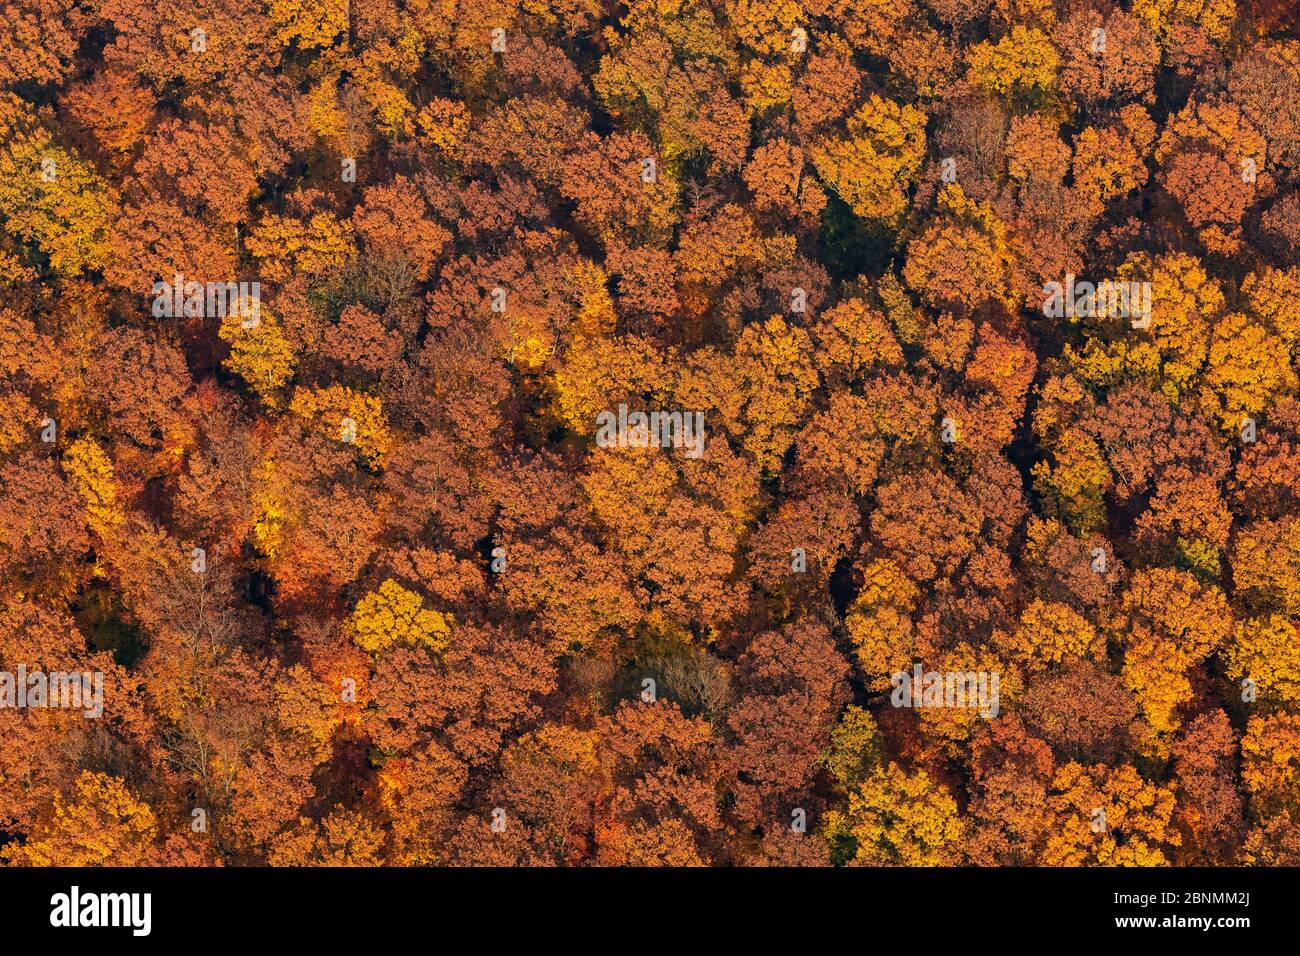 Couvert forestier de hêtre primaire (Fagus sylvatica) en automne (aérien), Spessart, Allemagne, octobre 2015. Banque D'Images